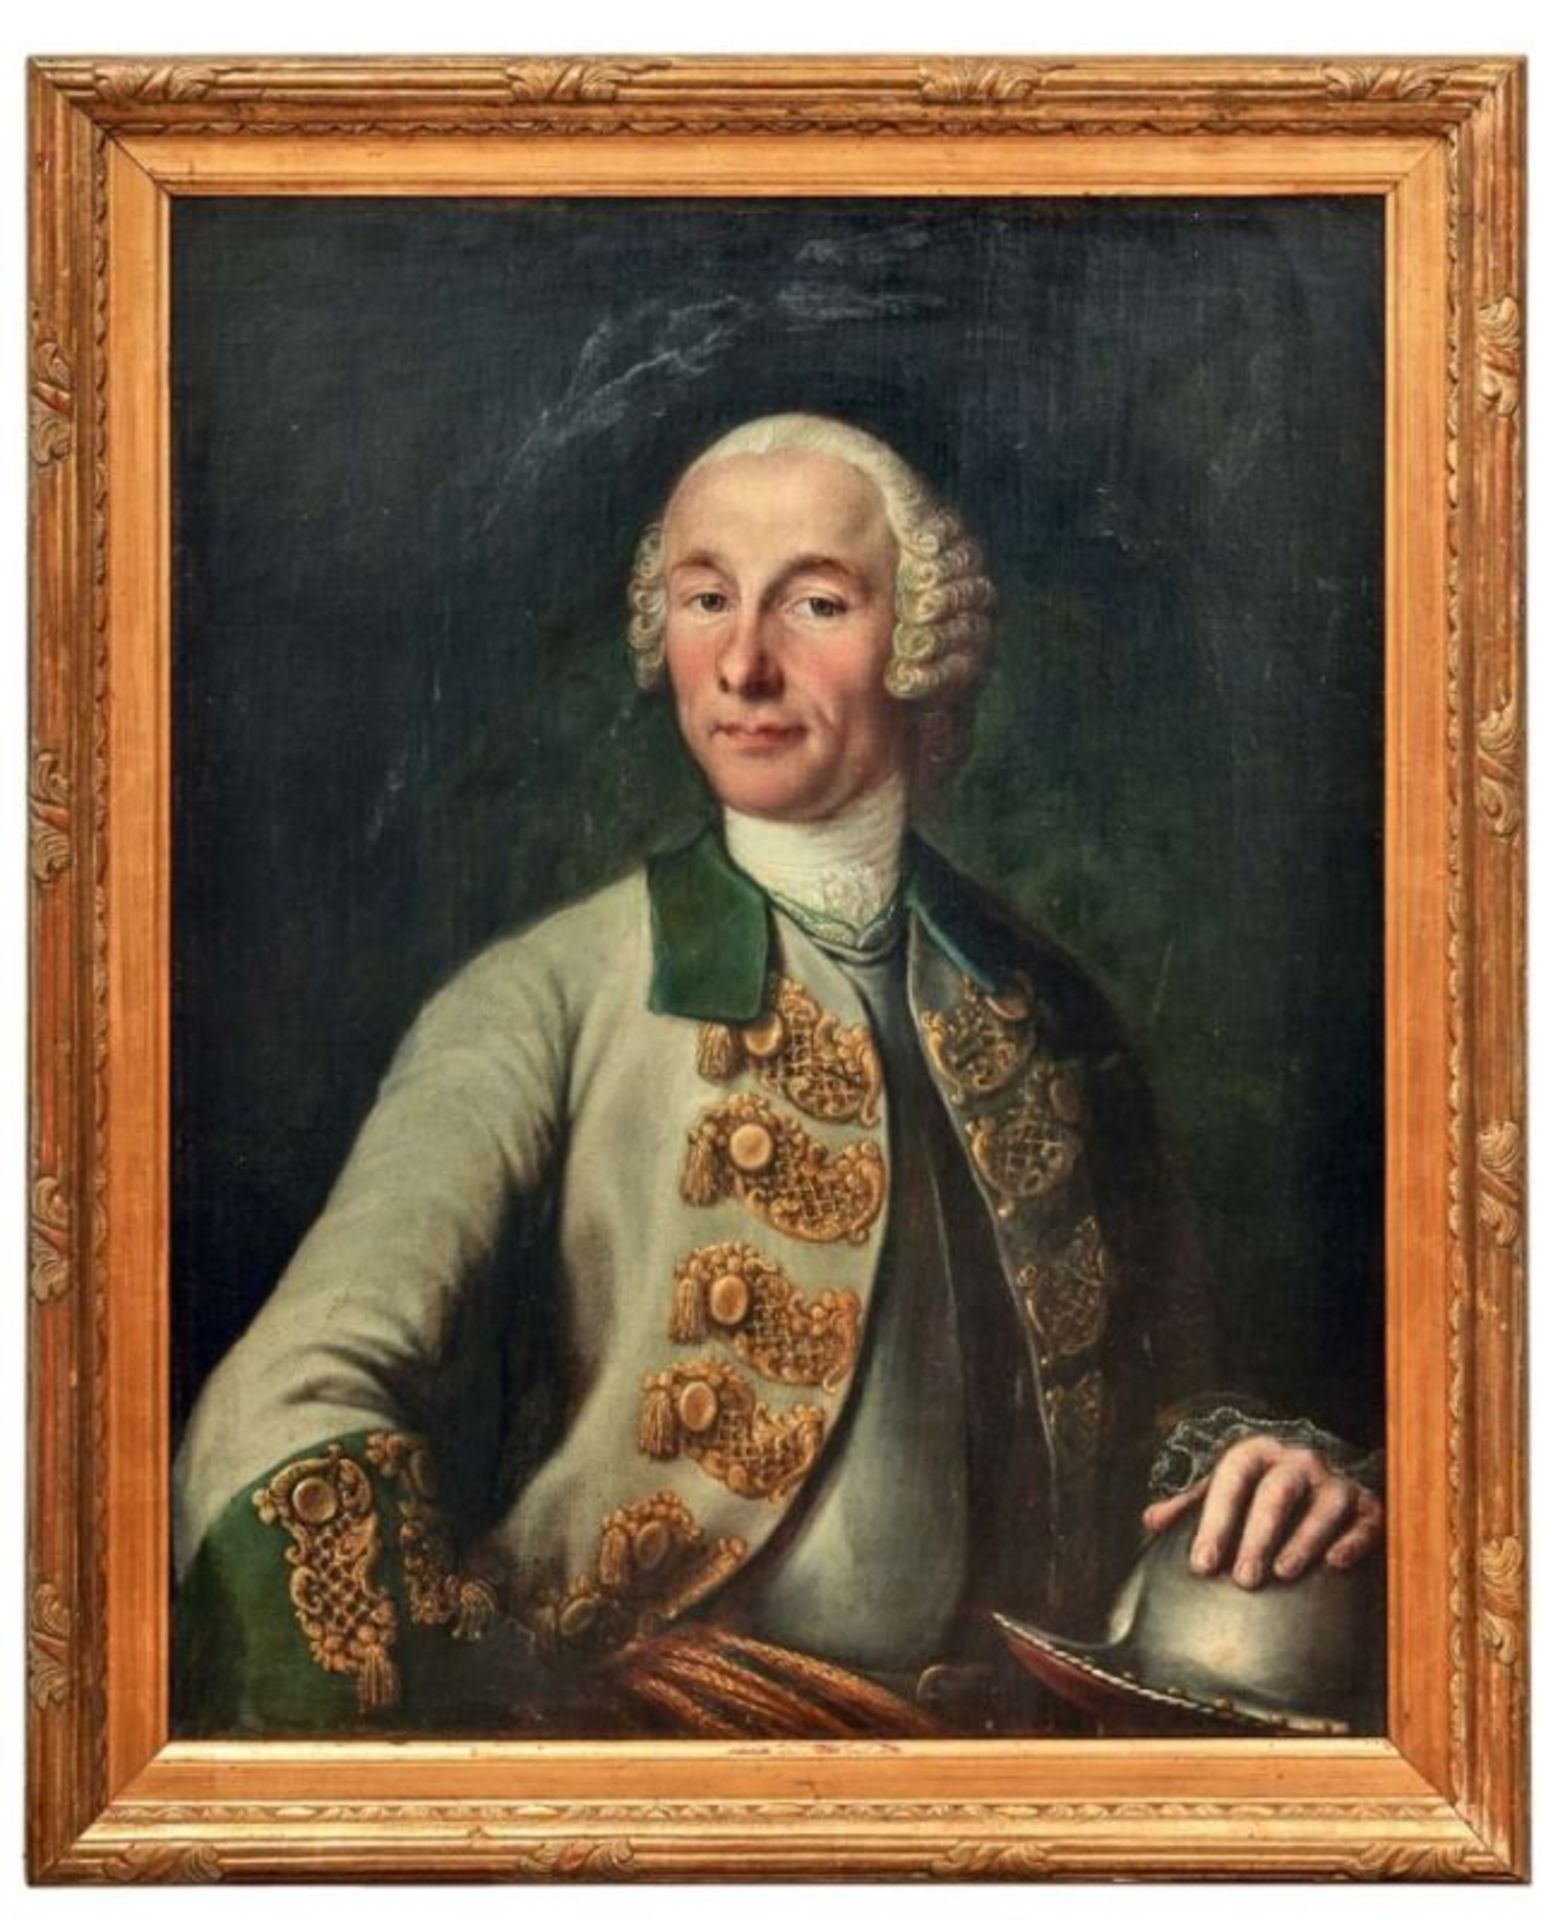 Bildnis eines adeligen Herren in HalbrüstungSüddeutschland, 18. Jh.Öl/Lwd., doubl. 81 x 64 cm.